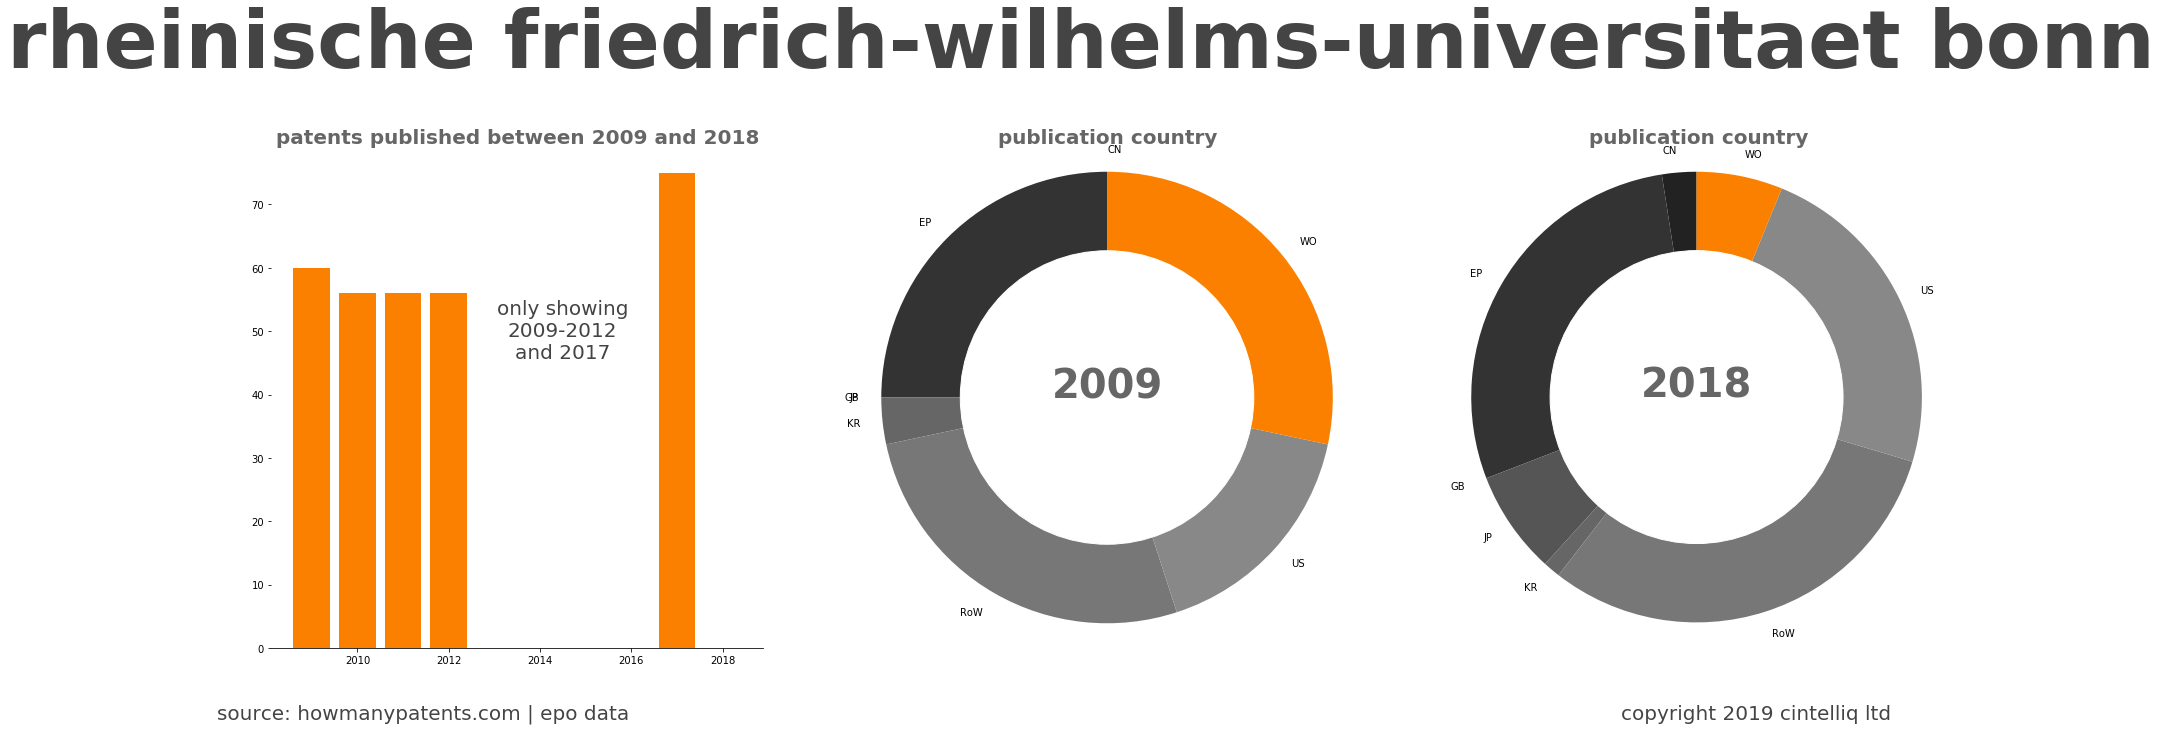 summary of patents for Rheinische Friedrich-Wilhelms-Universitaet Bonn